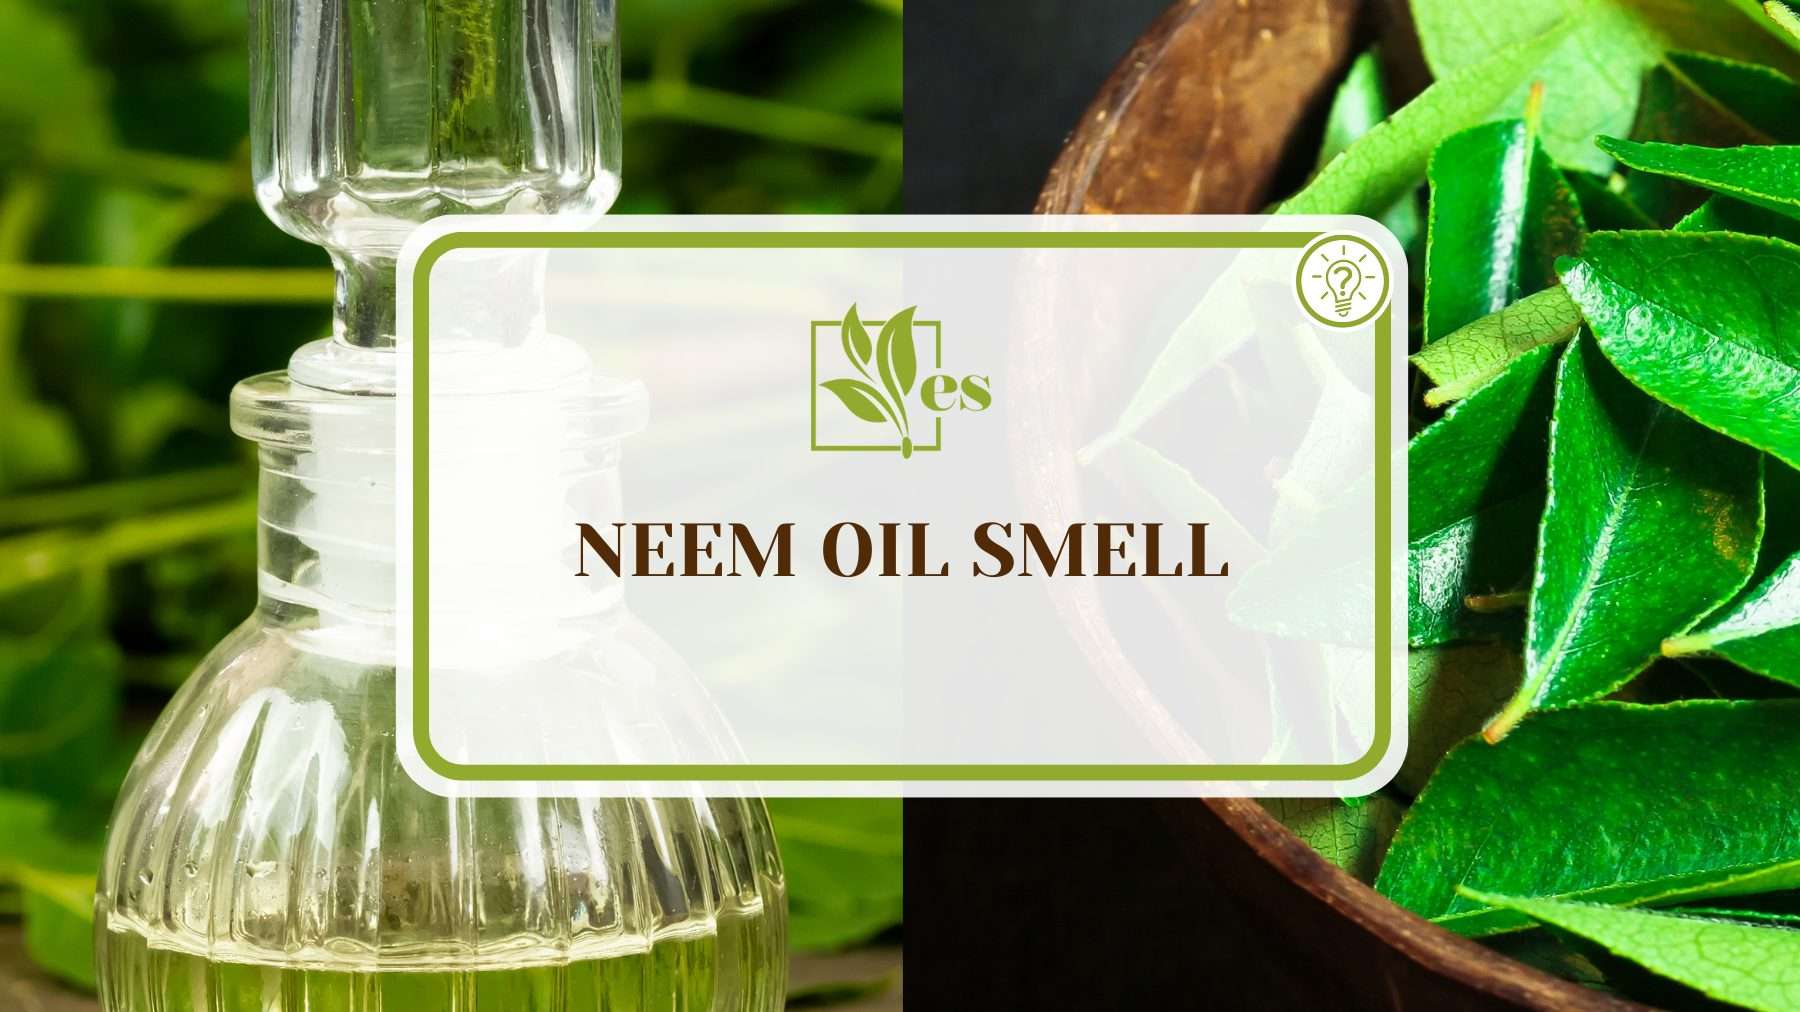 Neem Oil Smell